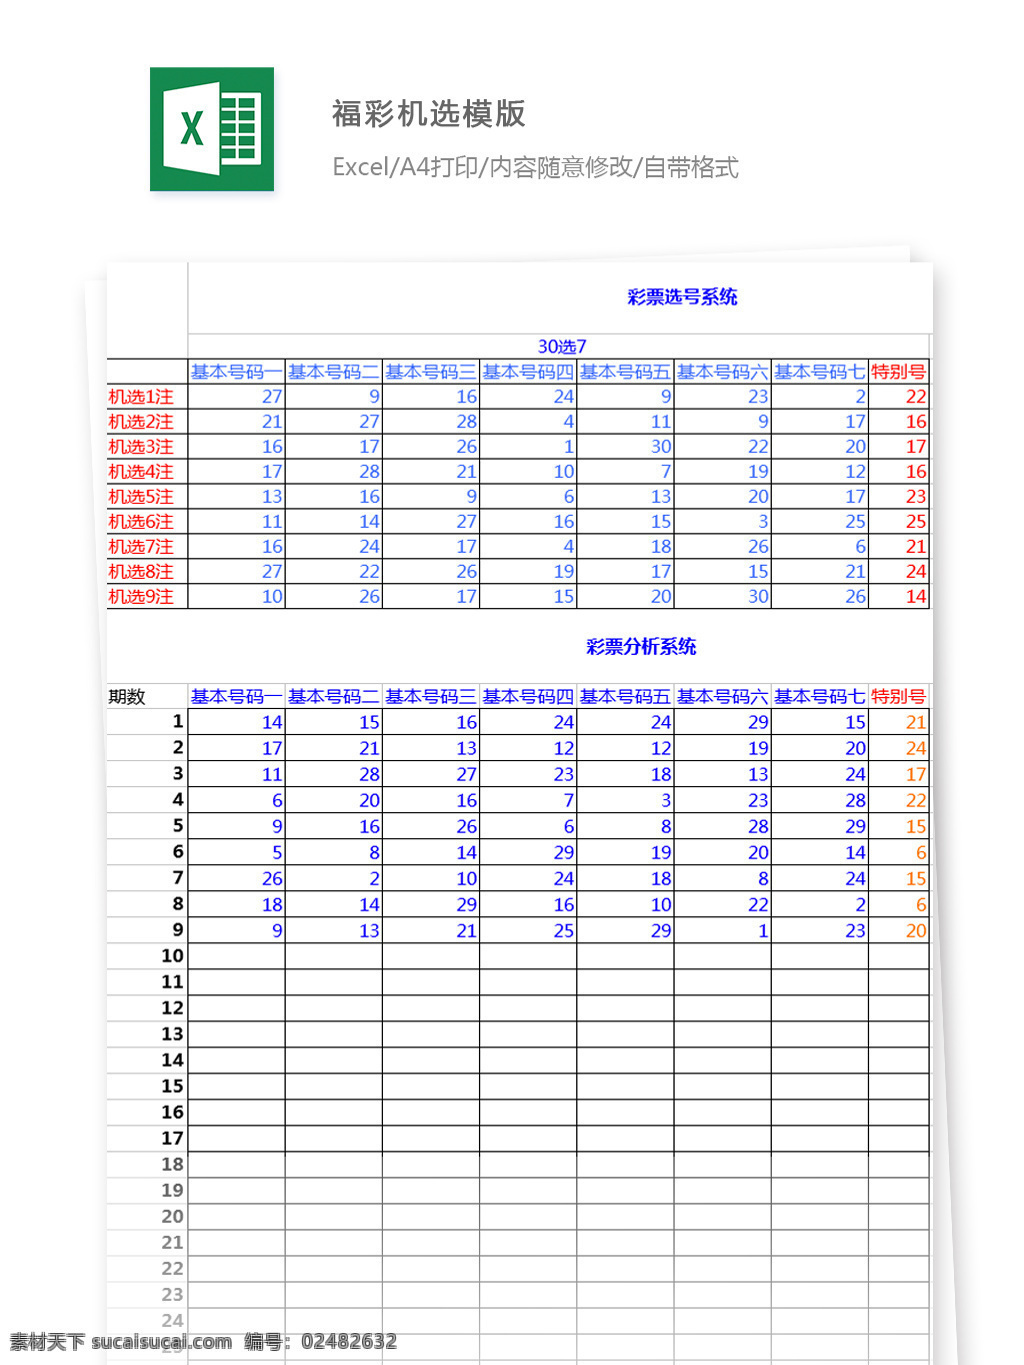 福彩机选模版 选号 基本号码 分析 系统 期数 表格